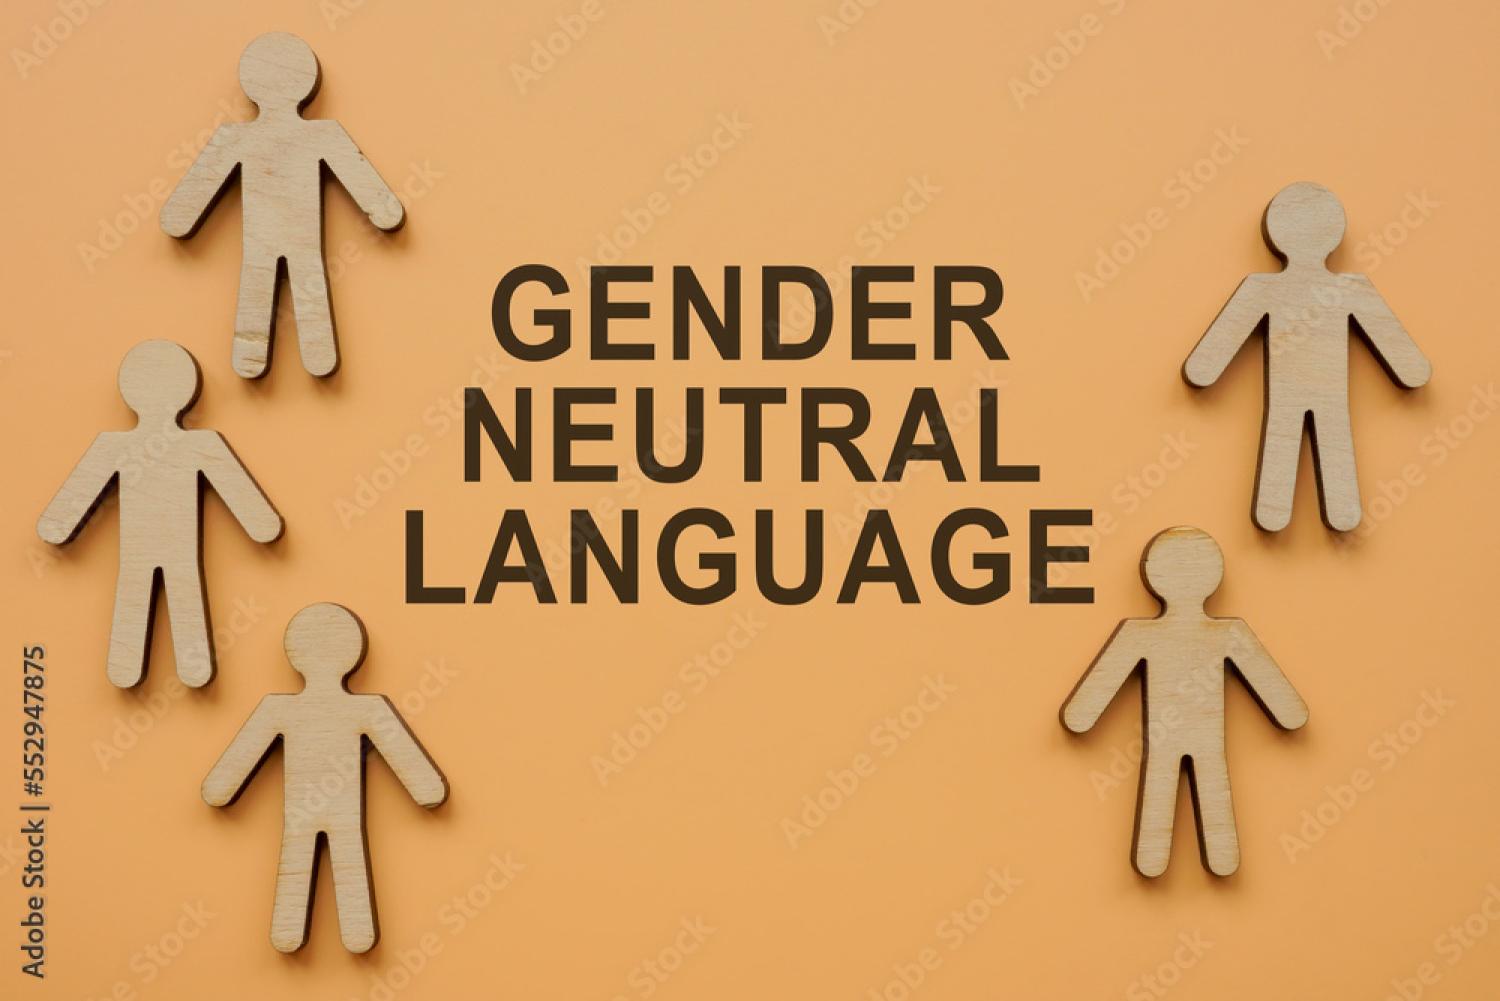 Gender neutral language